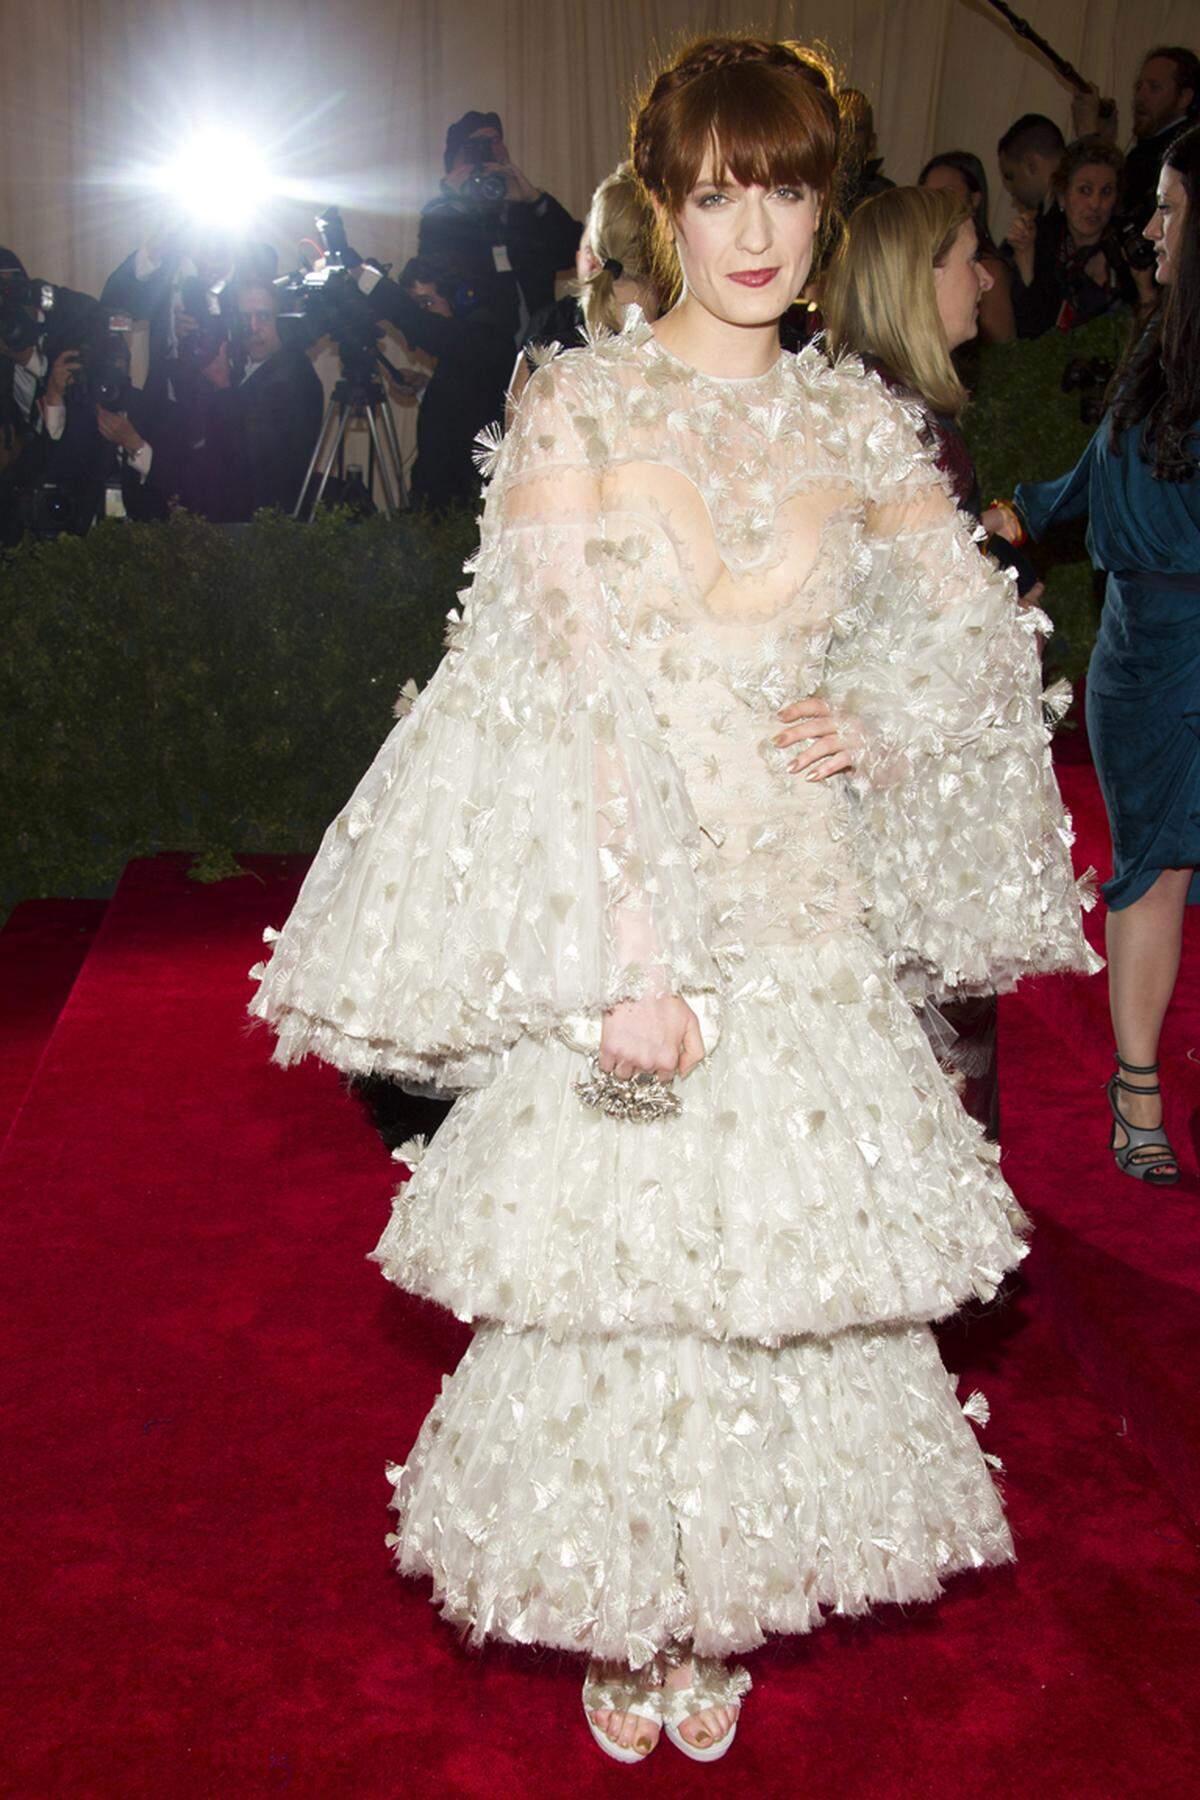 Sängerin Florence Welch kam in einem rüschigen Blümchenkleid von Alexander McQueen. Wohl ein bisschen zu viel des Guten.